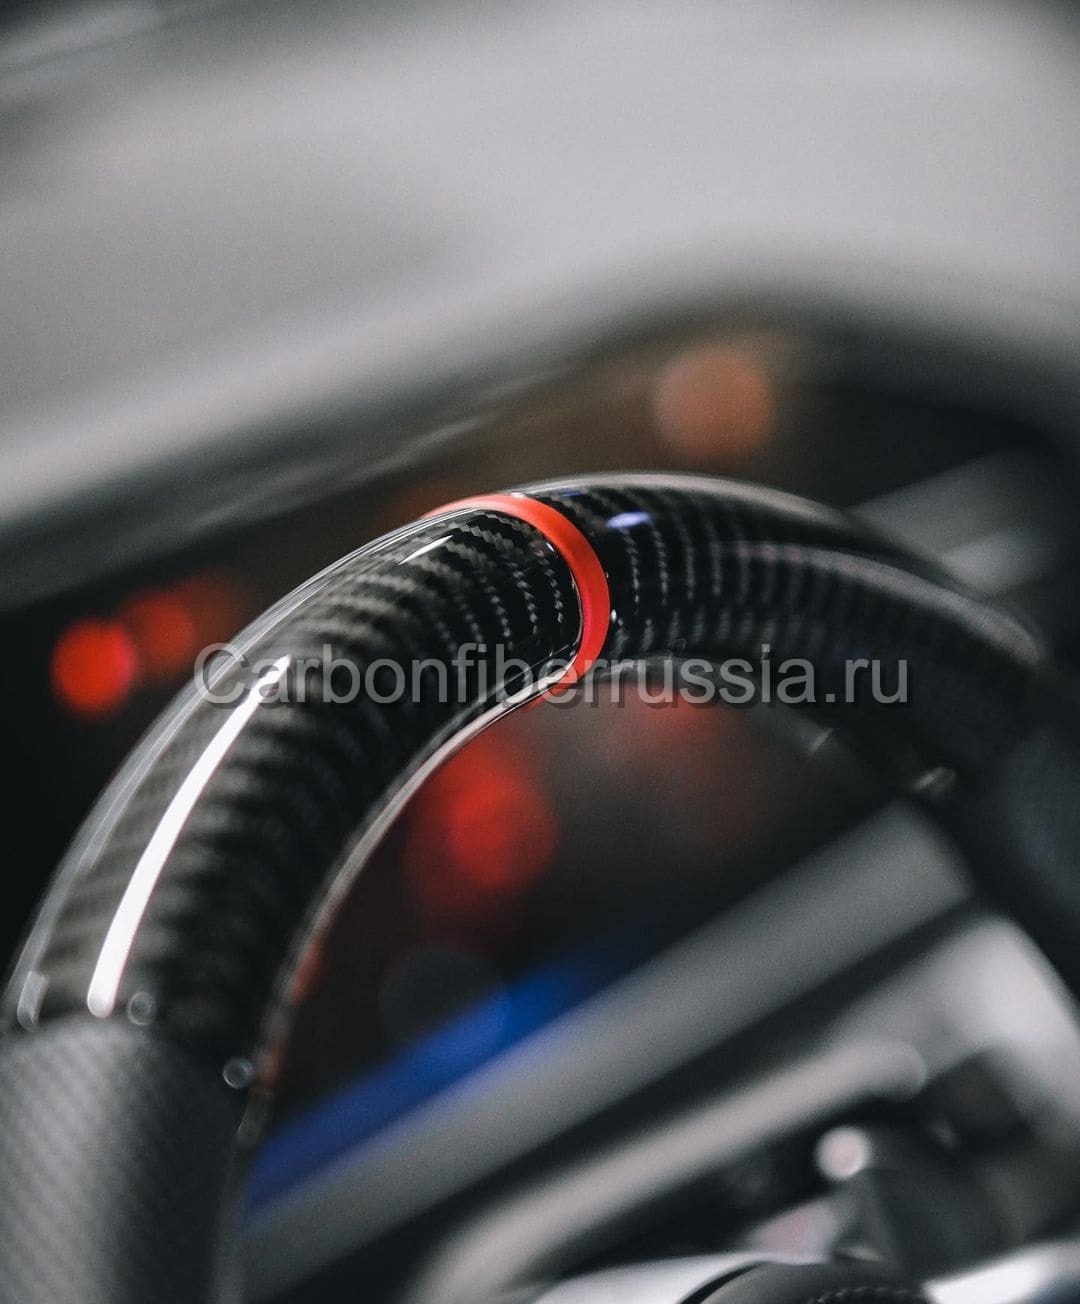 Карбоновый руль | CarbonFiberRussia